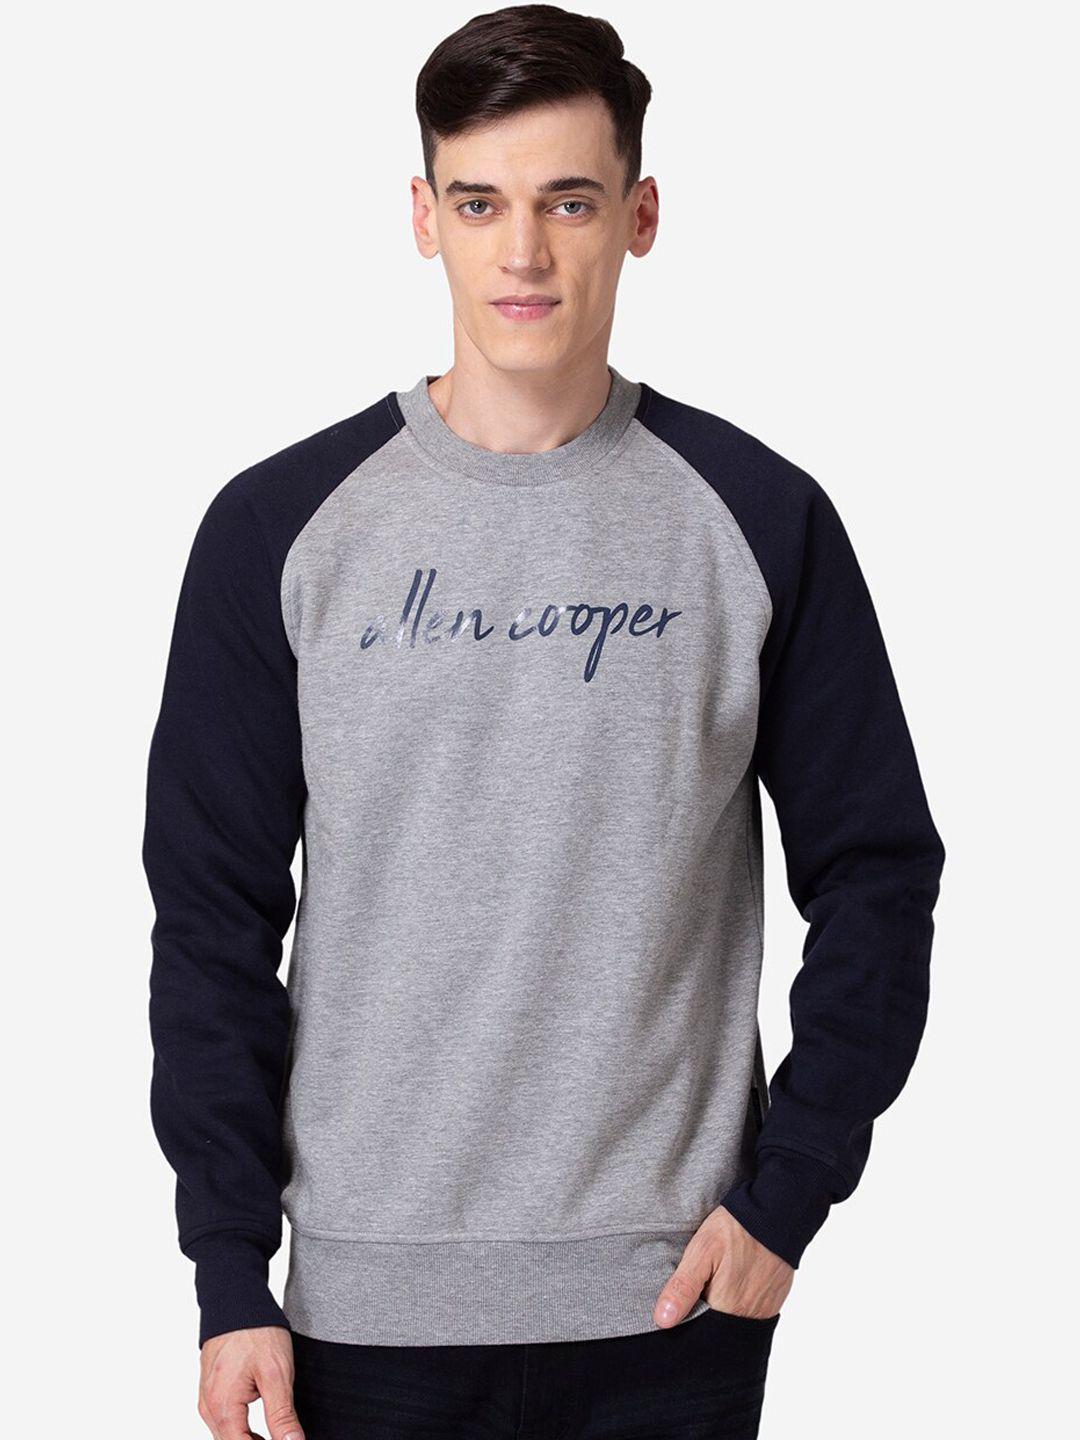 allen-cooper-men-grey-melange-&-black-printed-sweatshirt